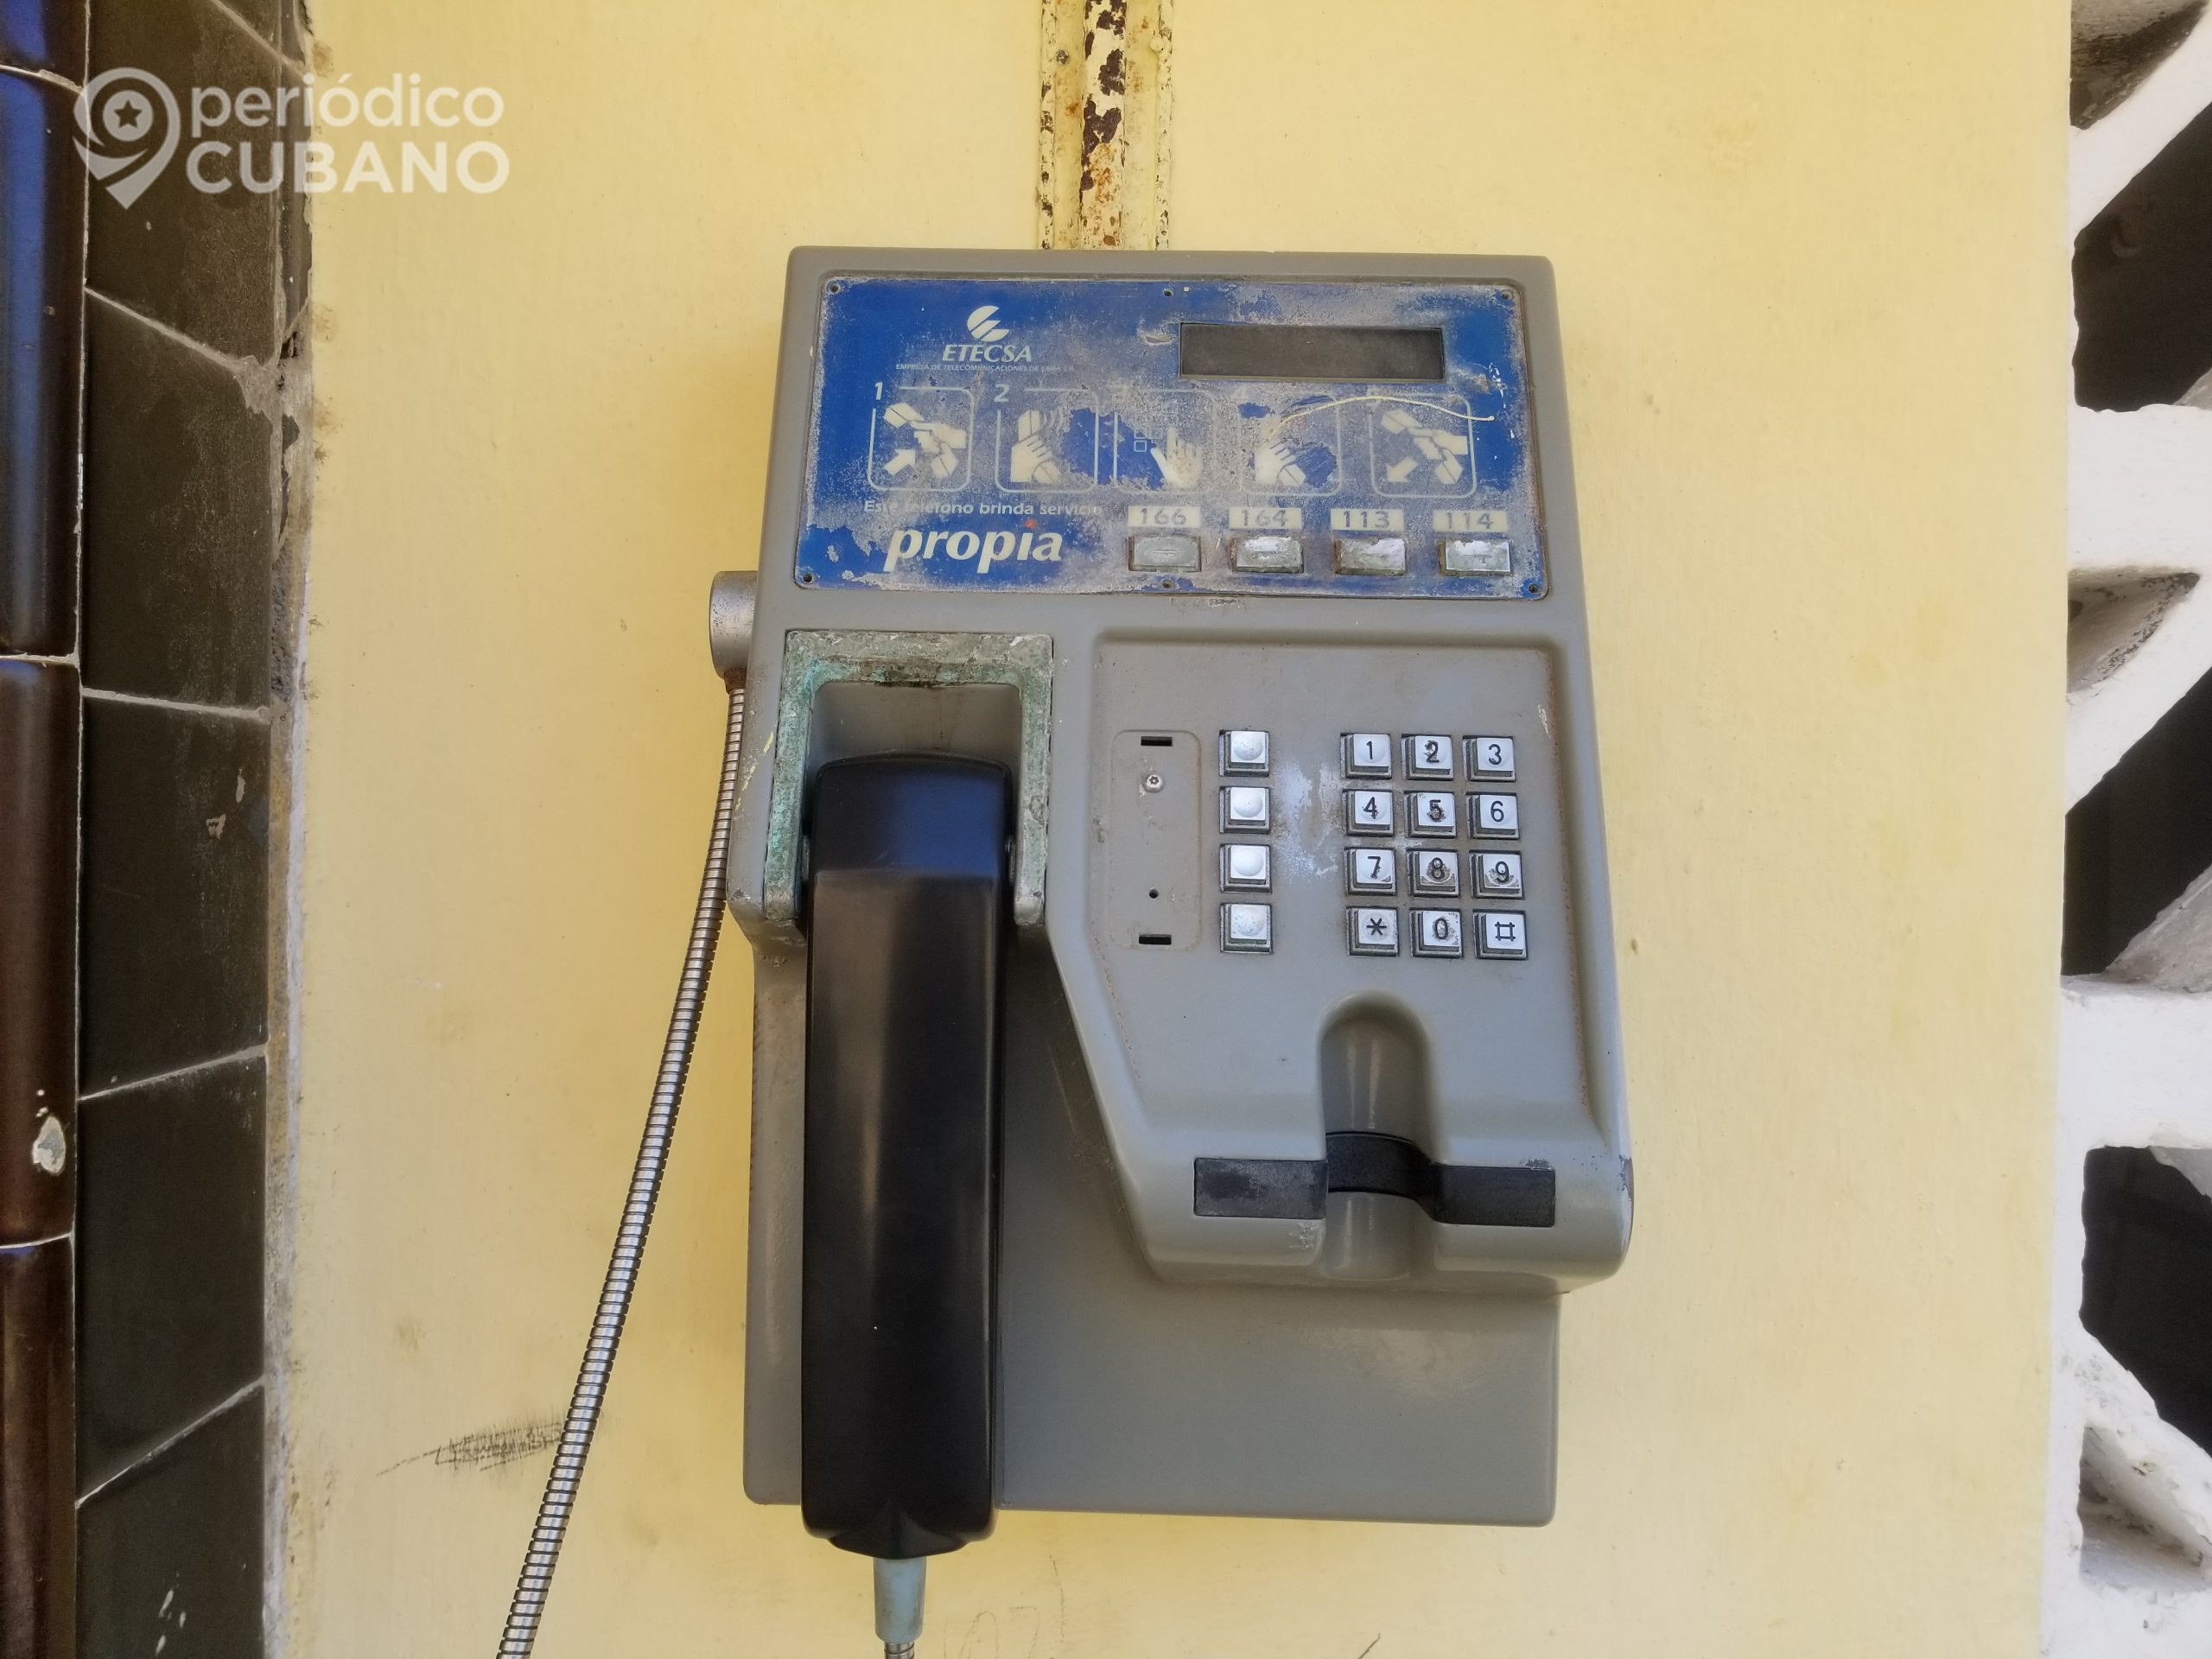 Etecsa ofrece descuento del 50% en las llamadas desde Cuba a EEUU